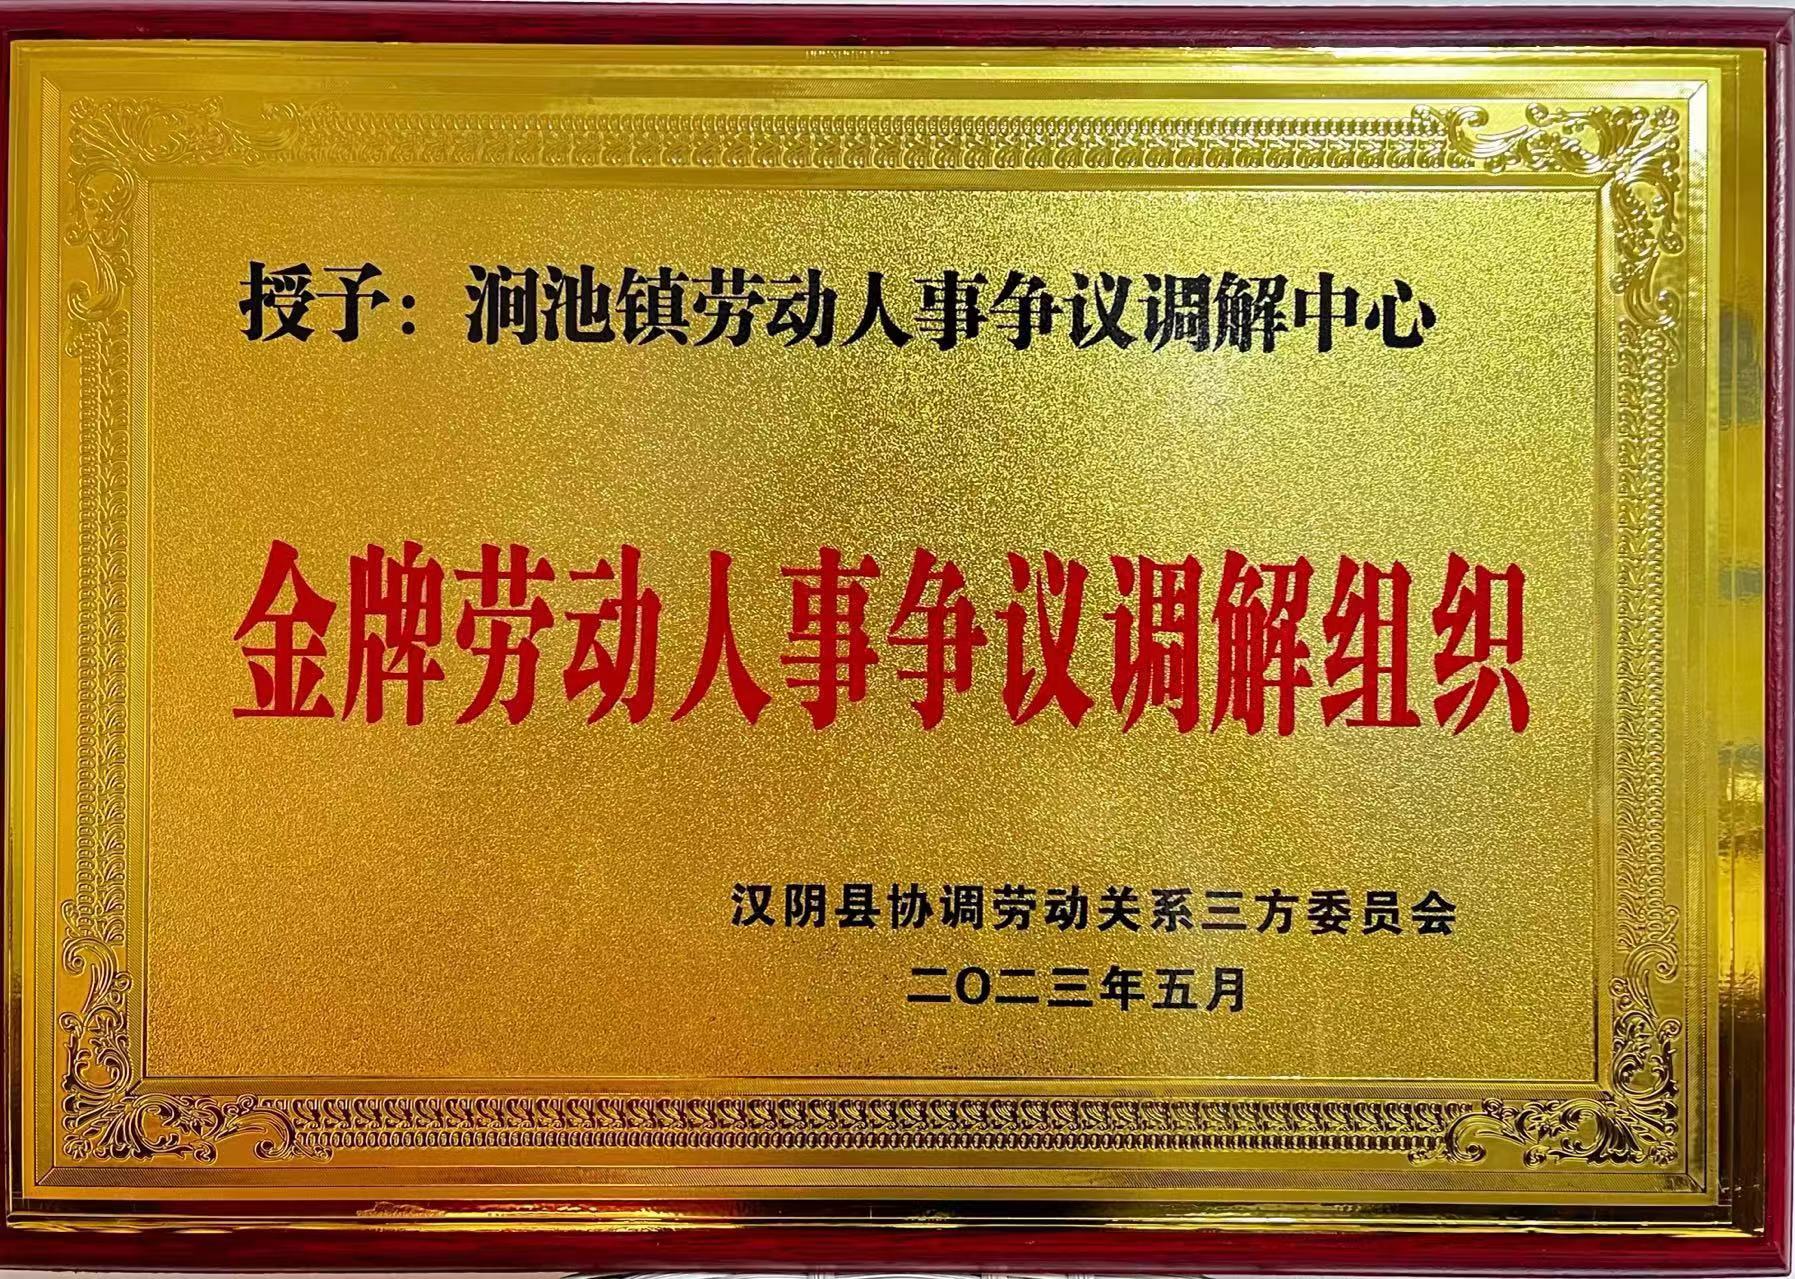 涧池镇荣获“金牌劳动人事争议调解组织”殊荣